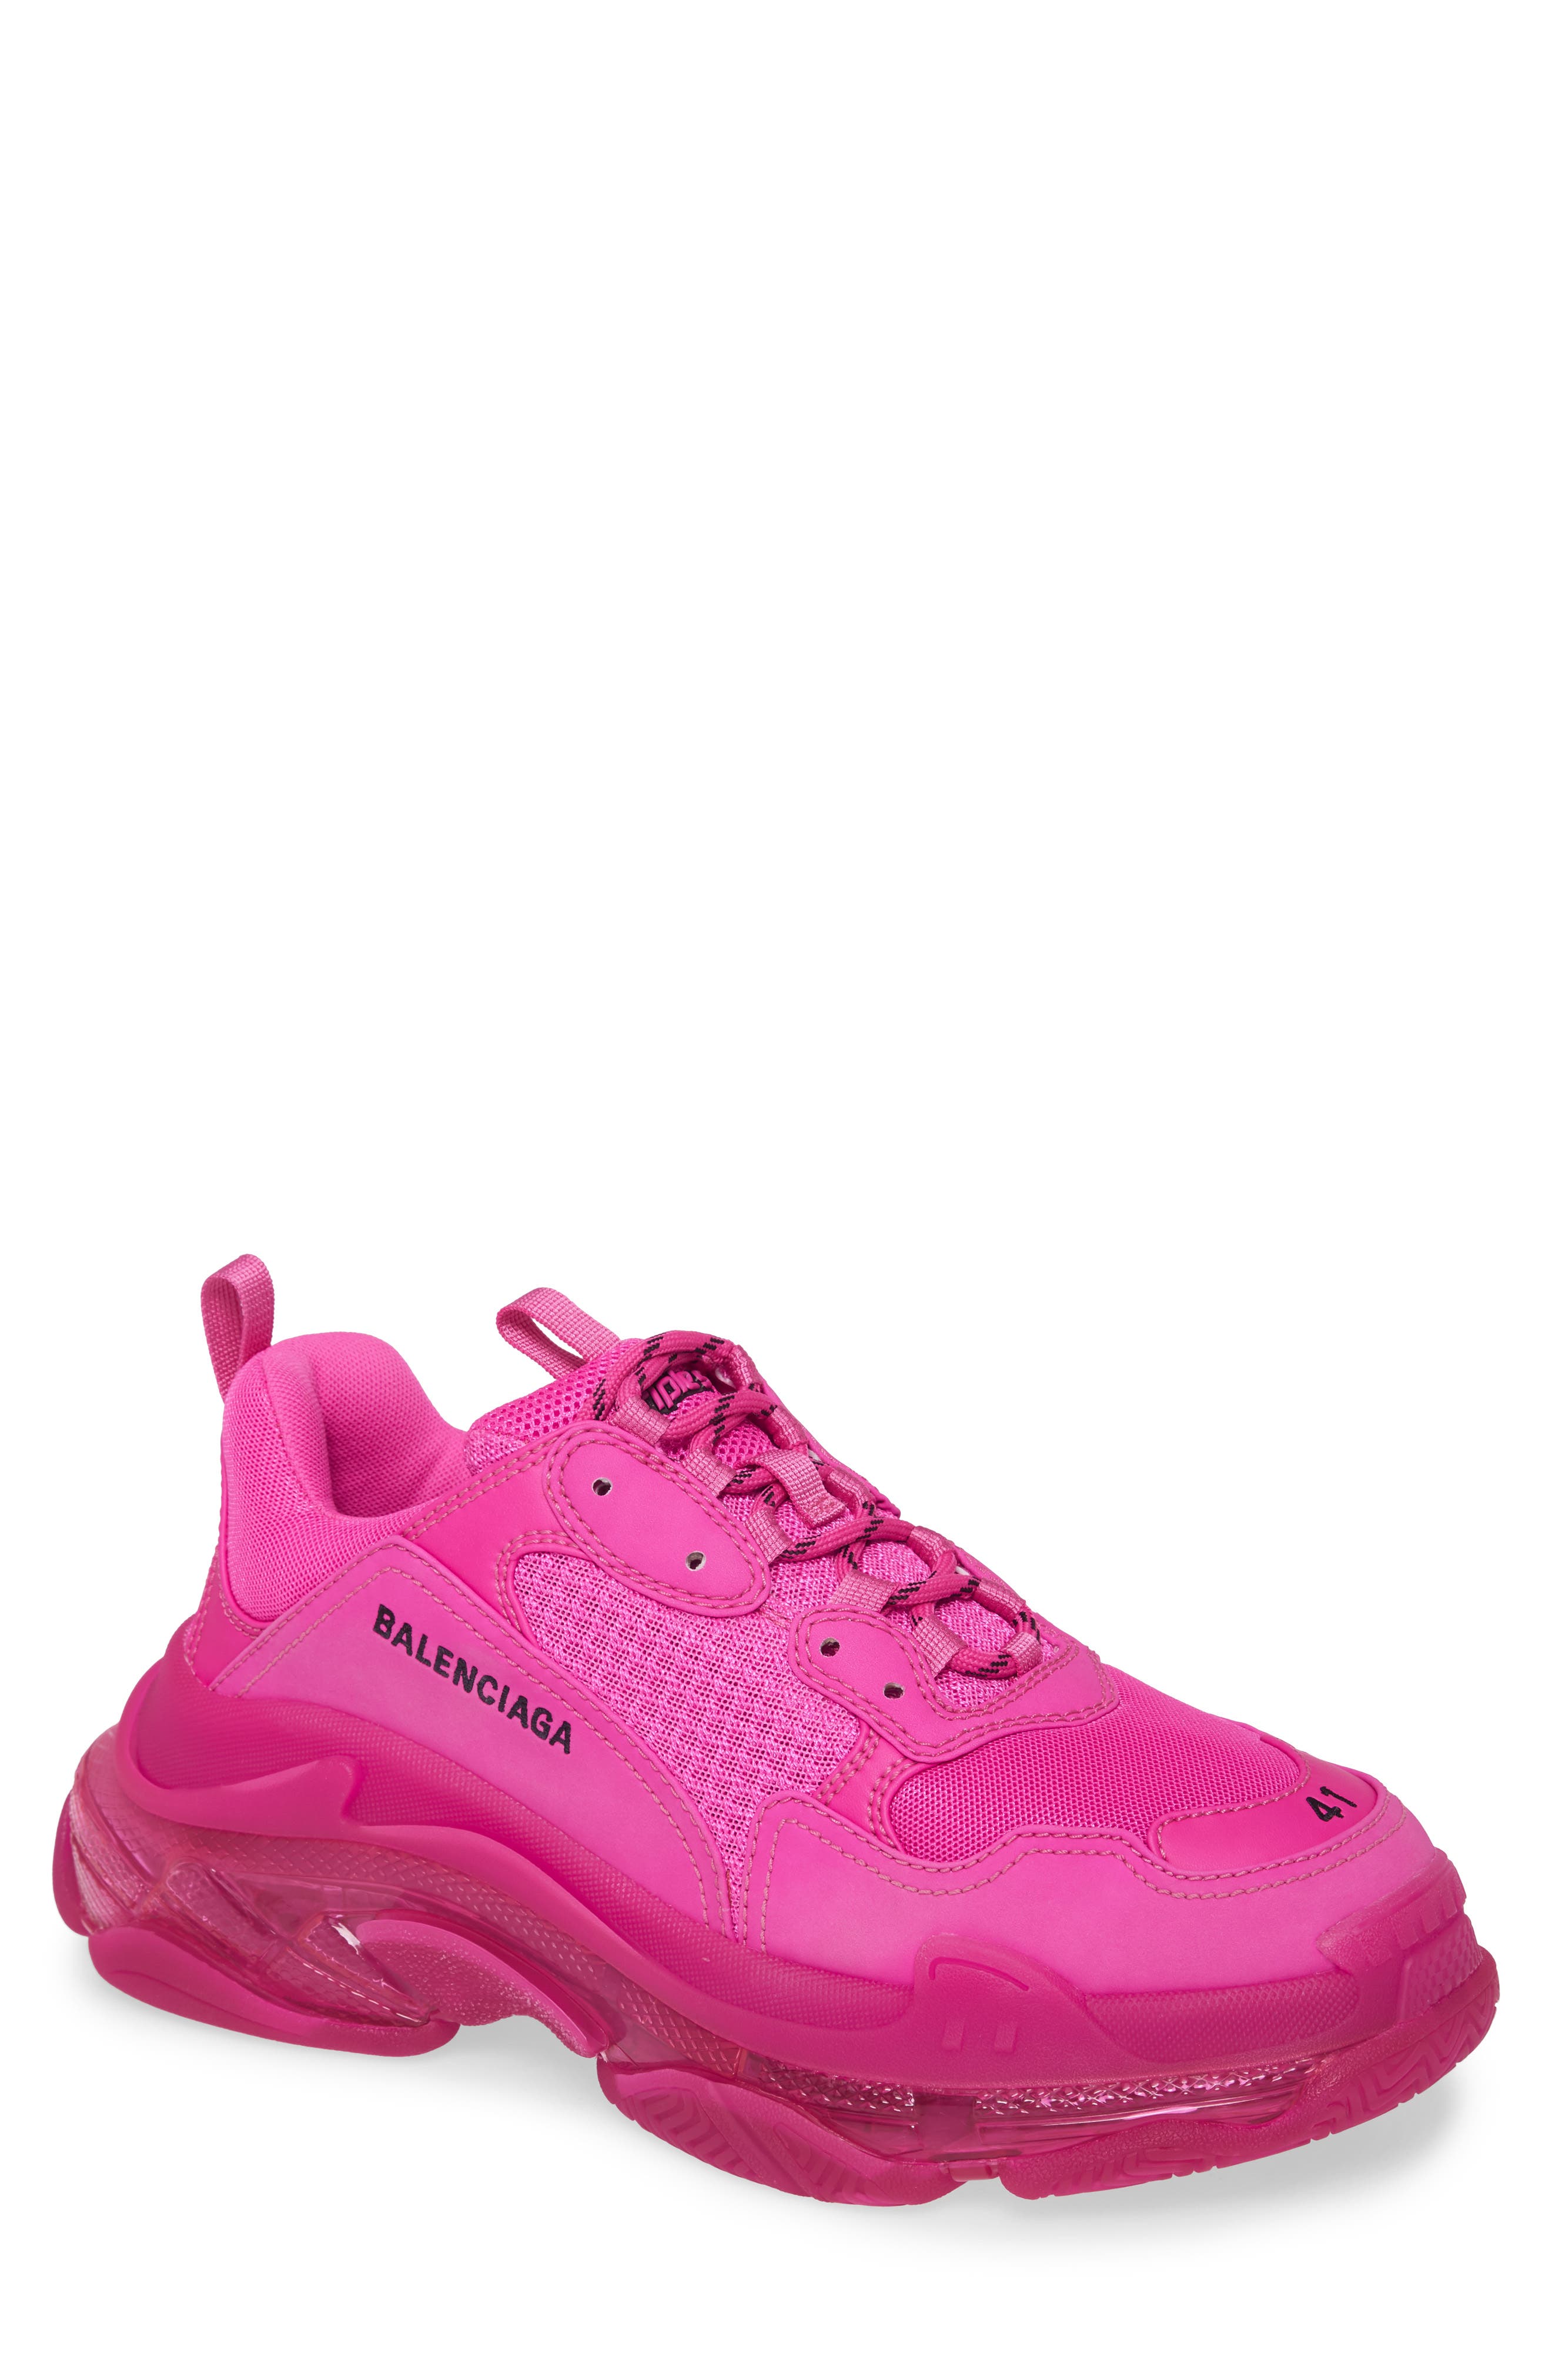 mens pink designer sneakers